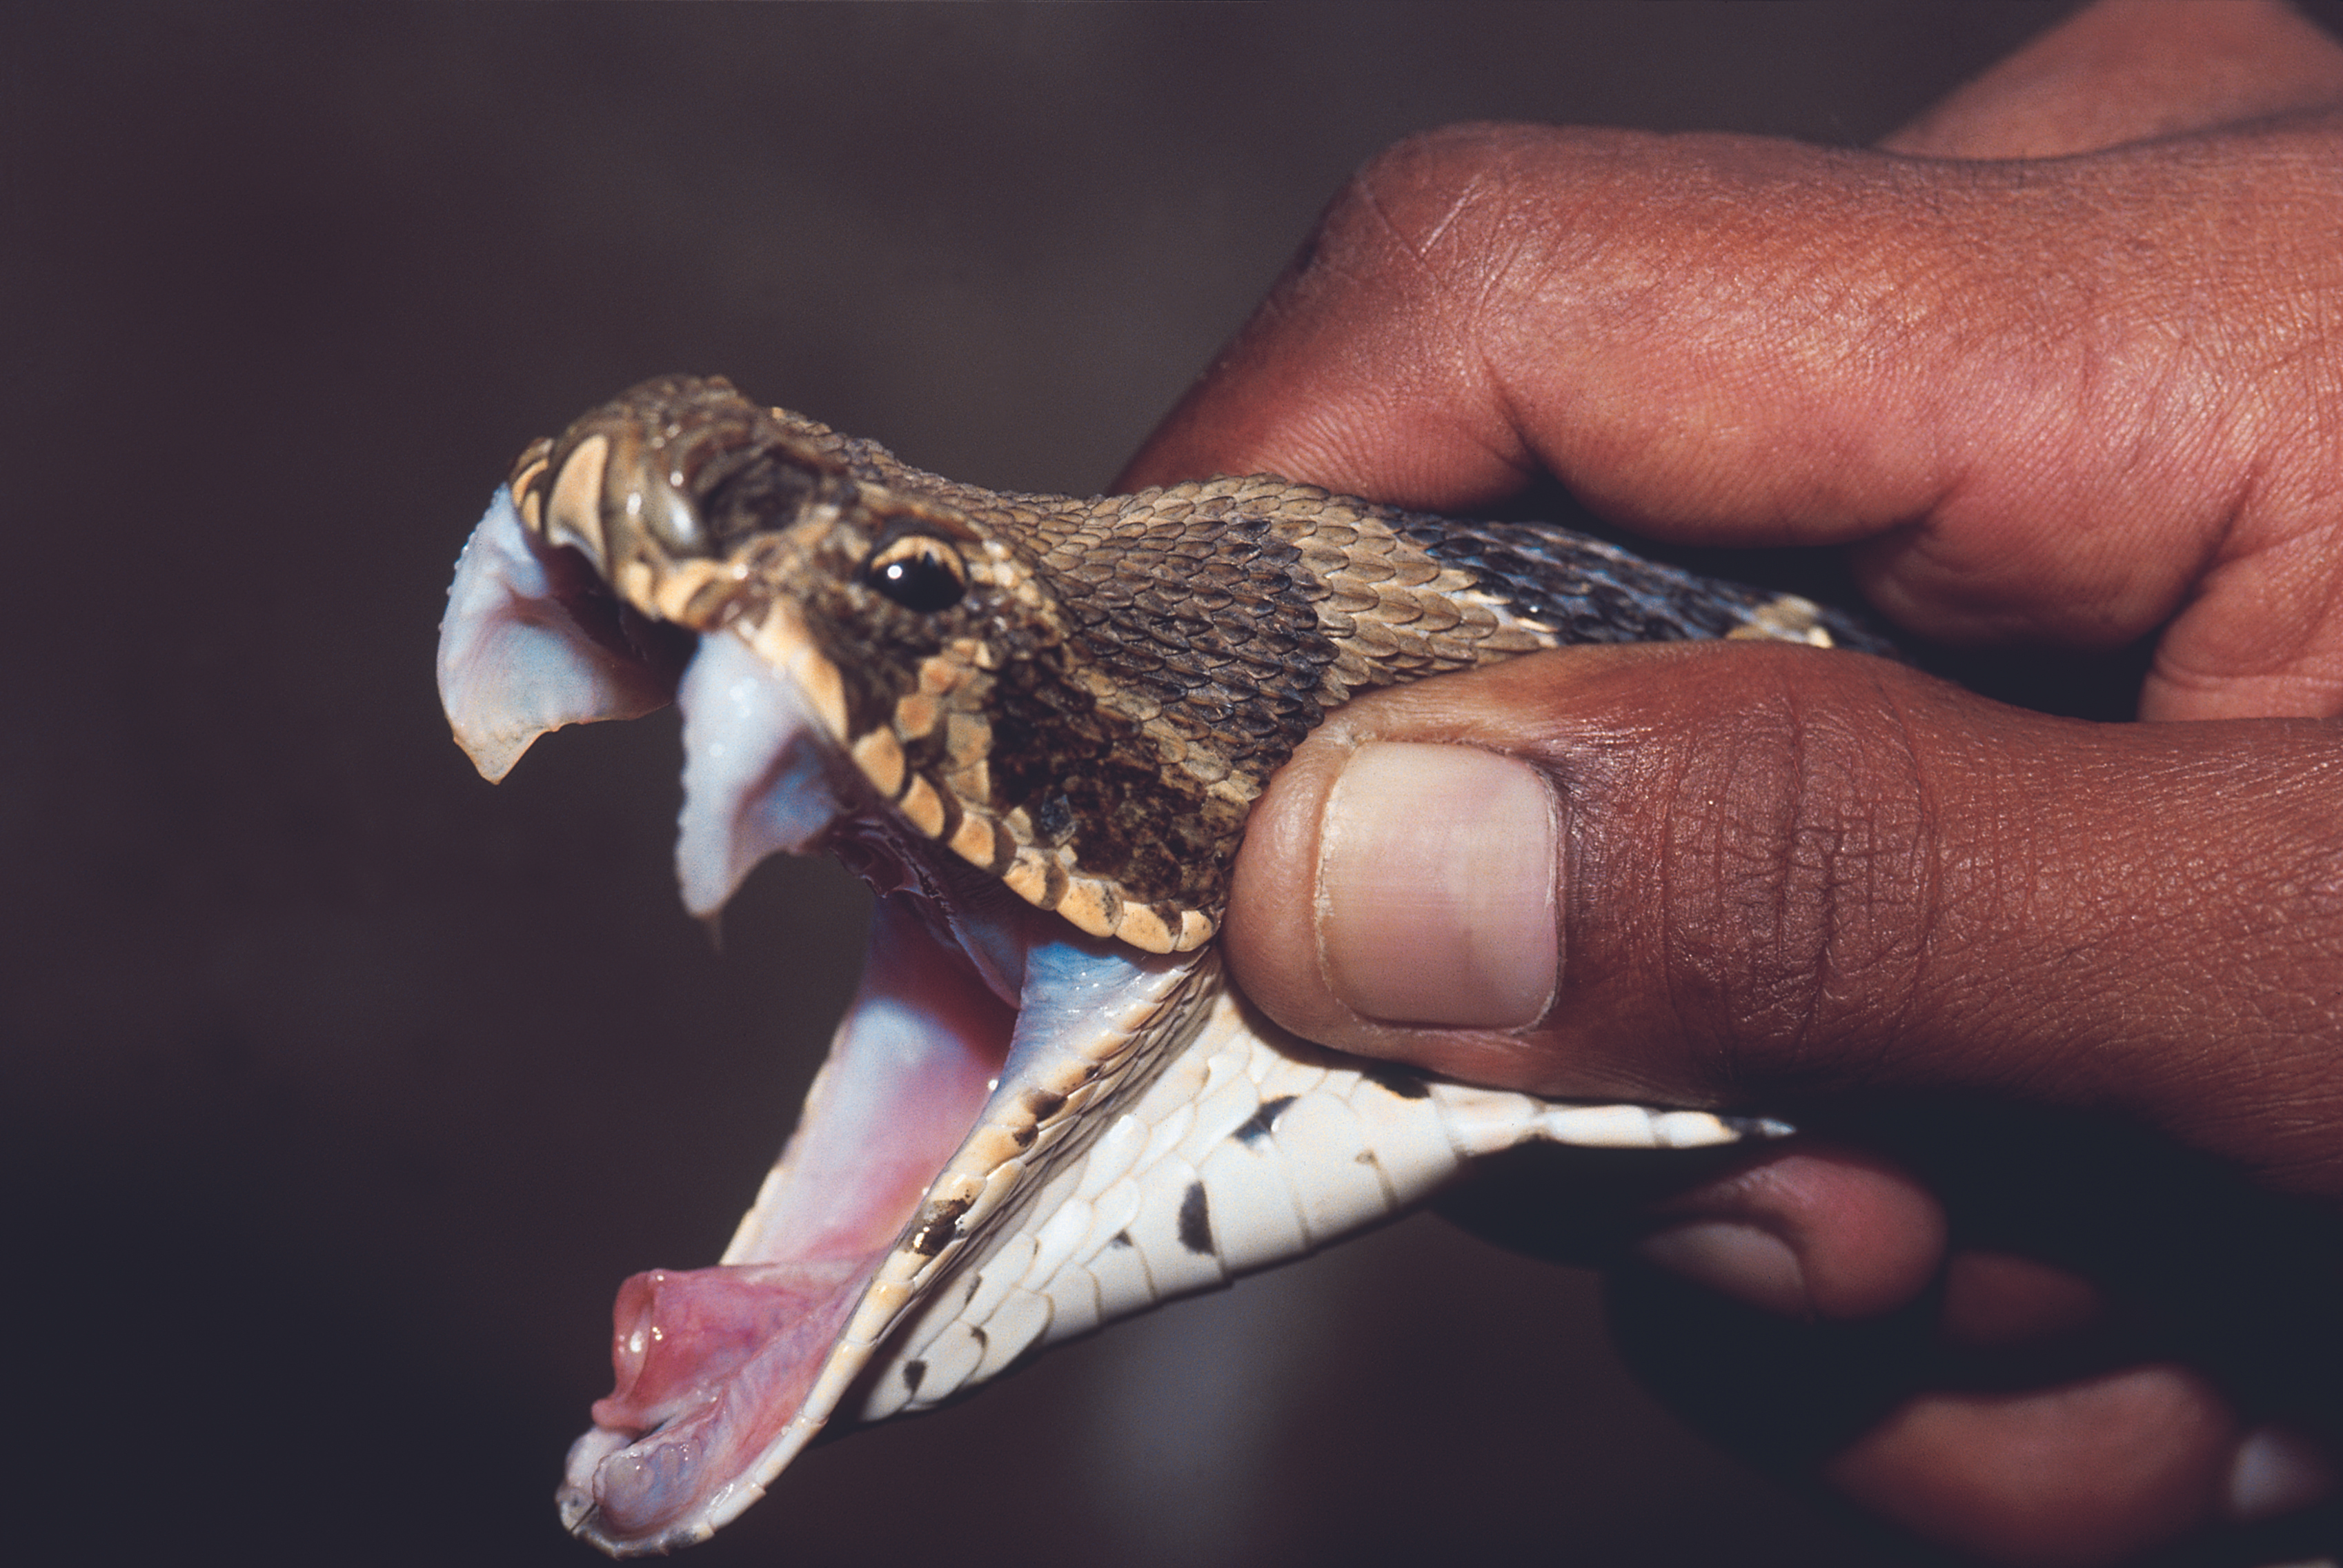 Les décès dus aux morsures de serpent pourraient être réduits par sept étapes simples